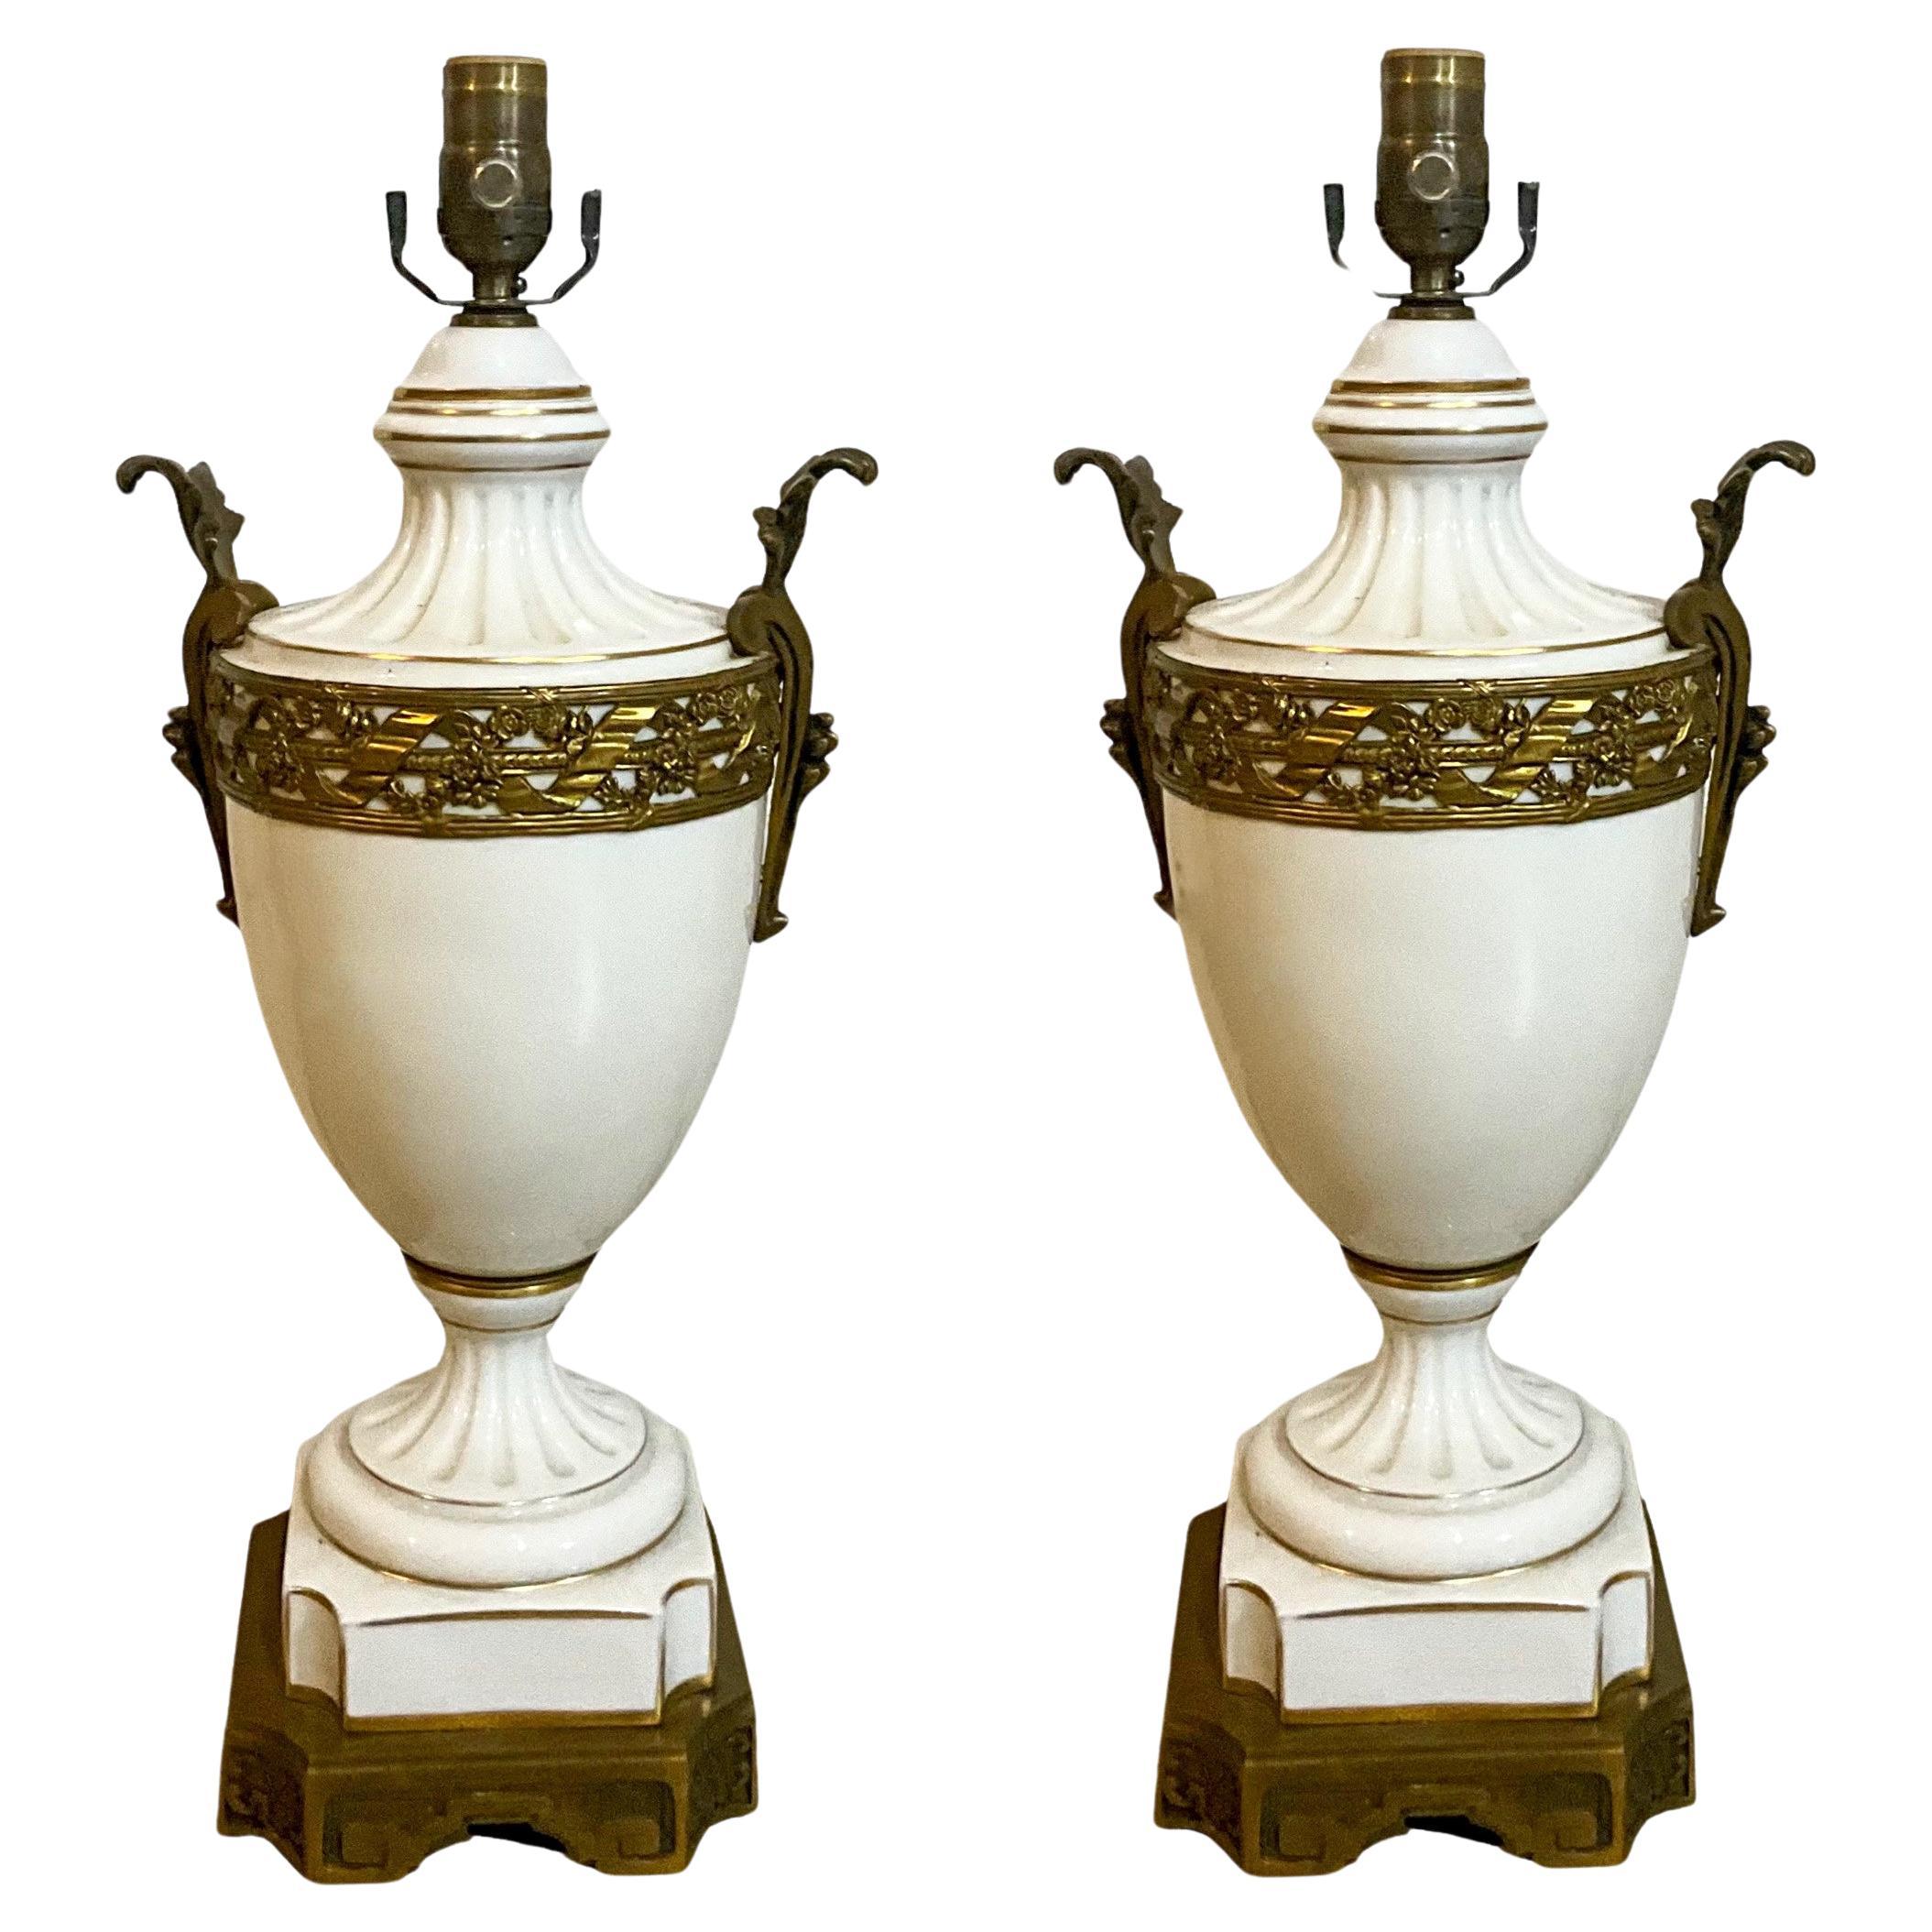 19ème siècle. Paire de lampes de bureau de style néoclassique français en porcelaine et bronze doré